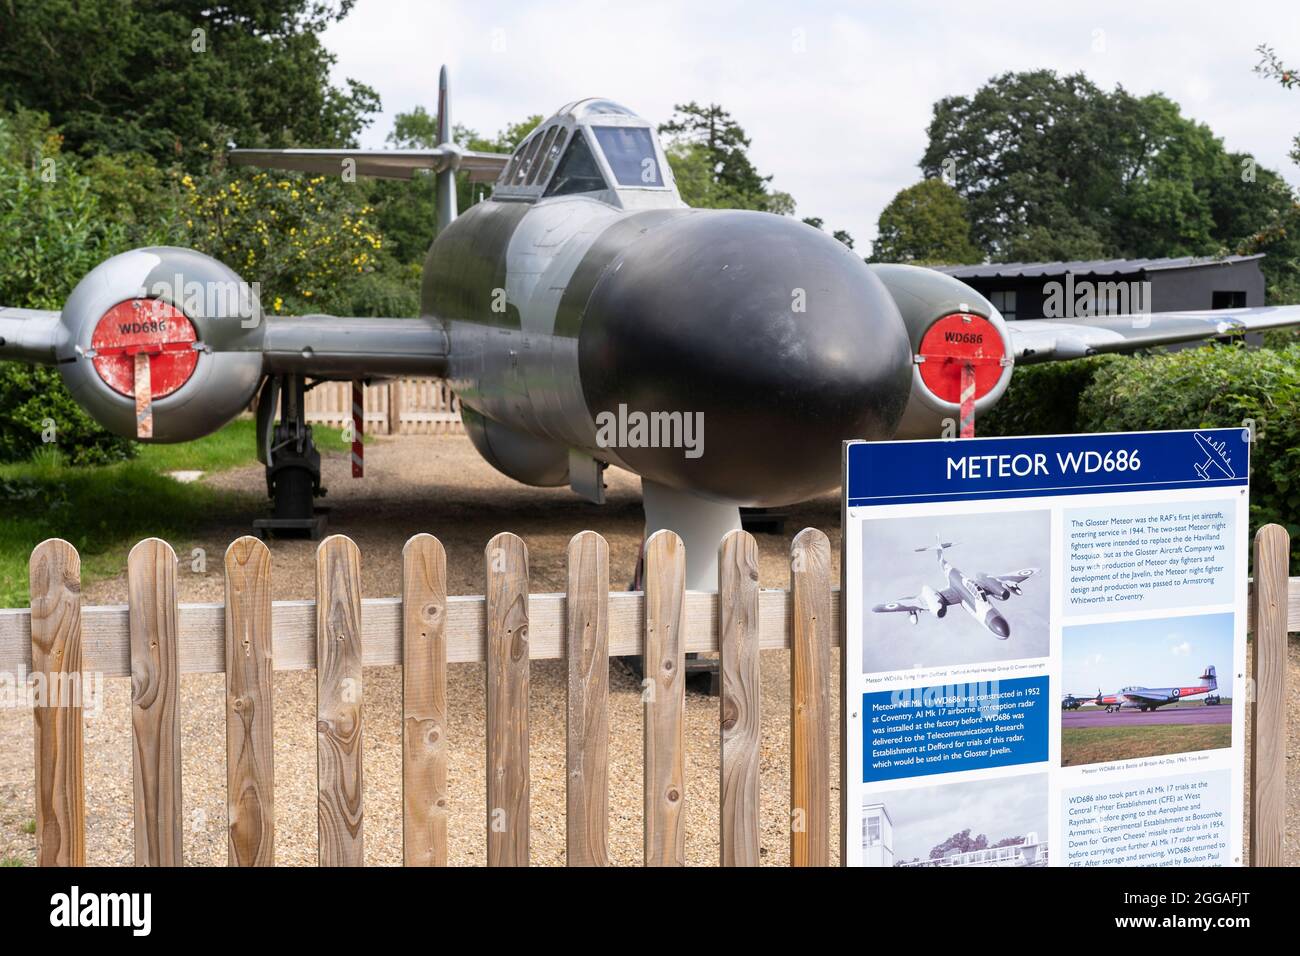 El último avión que voló fuera del aeródromo de Deffd fue el caza nocturno Gloster Meteor NF Mark 11 WD686. El avión está representado en el aeródromo de Deffd, Reino Unido Foto de stock